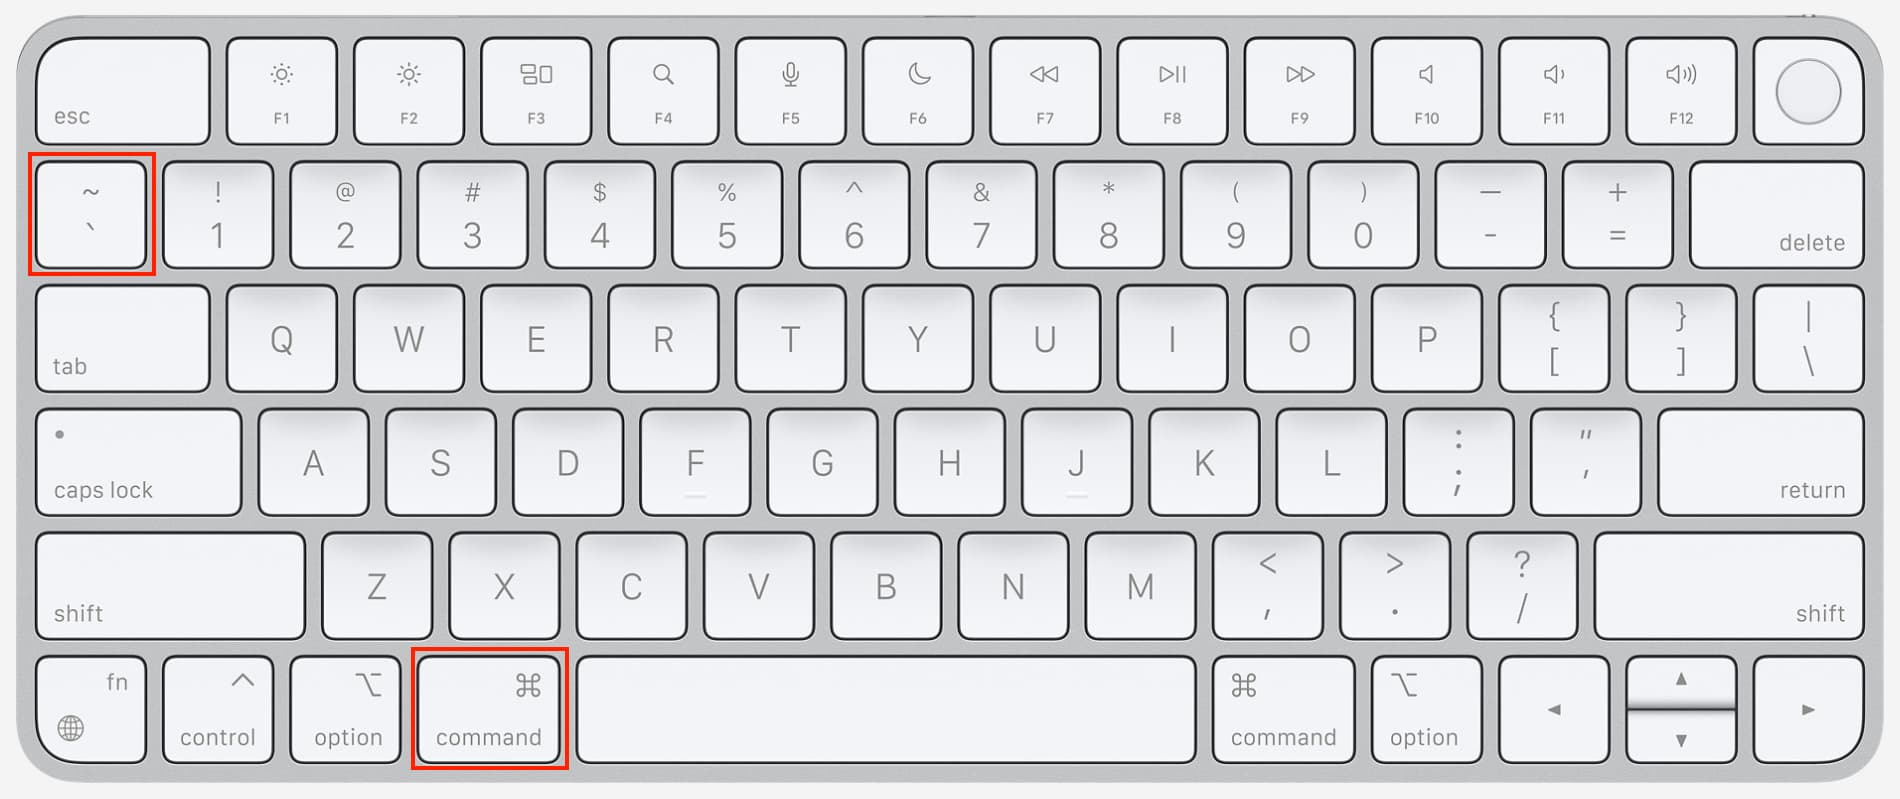 Command Tilde key on Mac keyboard